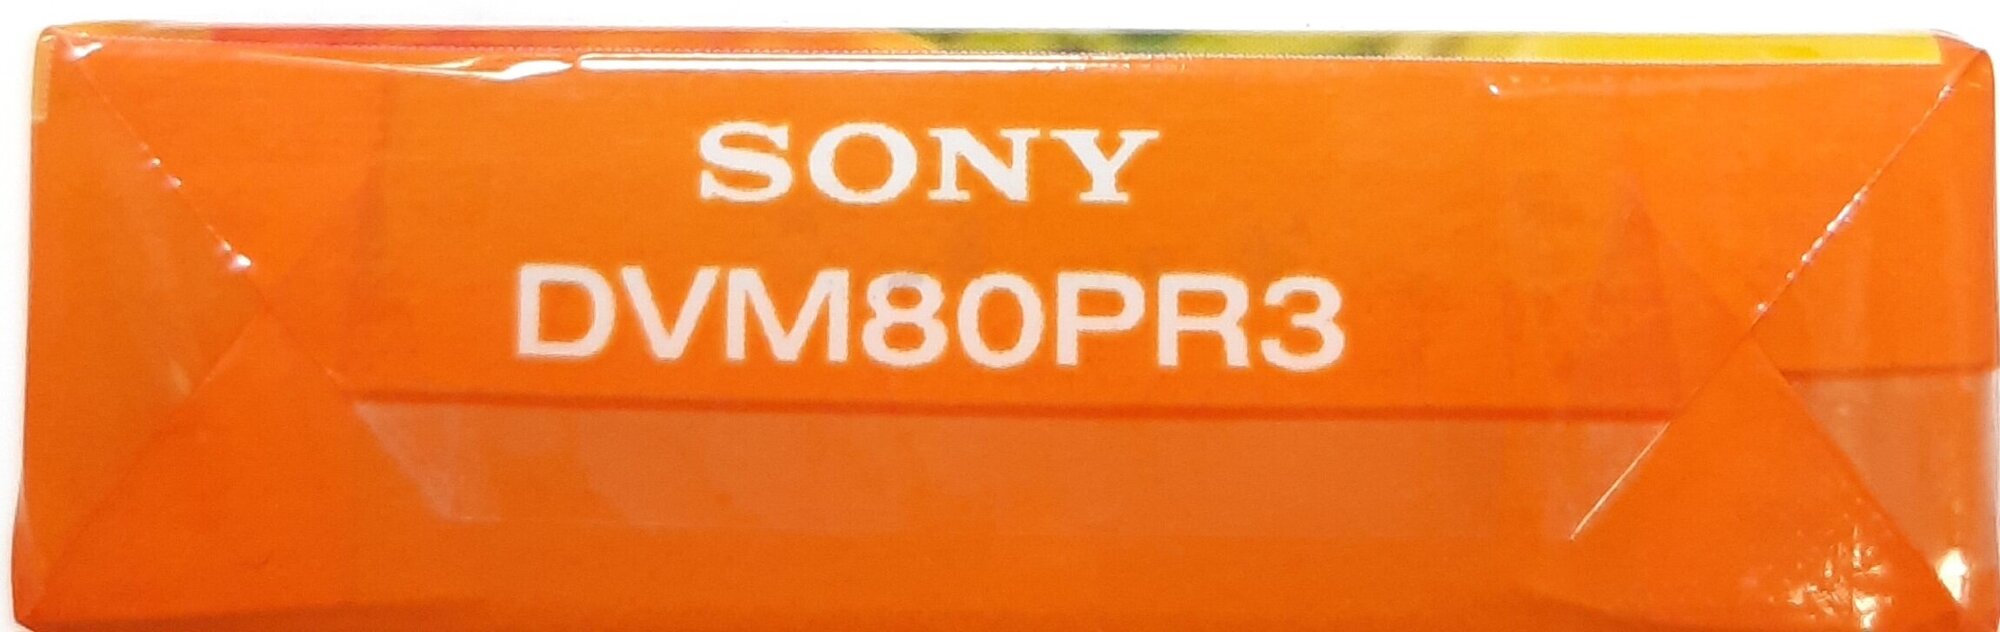 Цифровая видео касссета mini DV Sony DVM 80 , DVM80PR3.